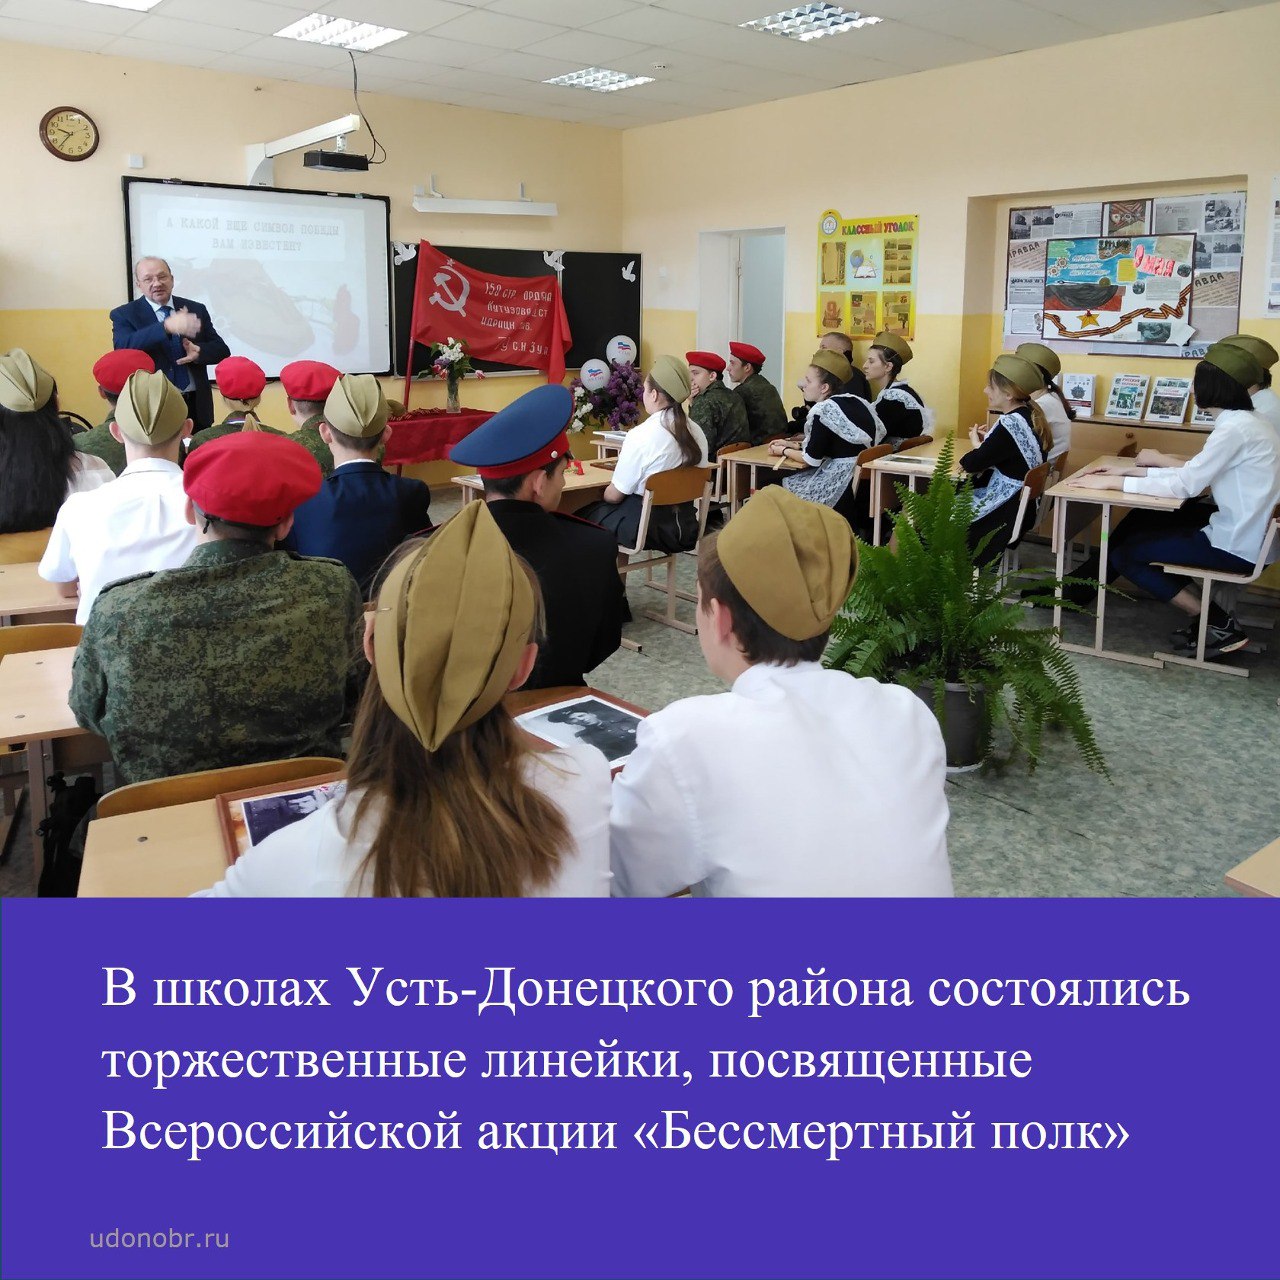 В школах Усть-Донецкого района состоялись торжественные линейки, посвященные Всероссийской акции «Бессмертный полк»